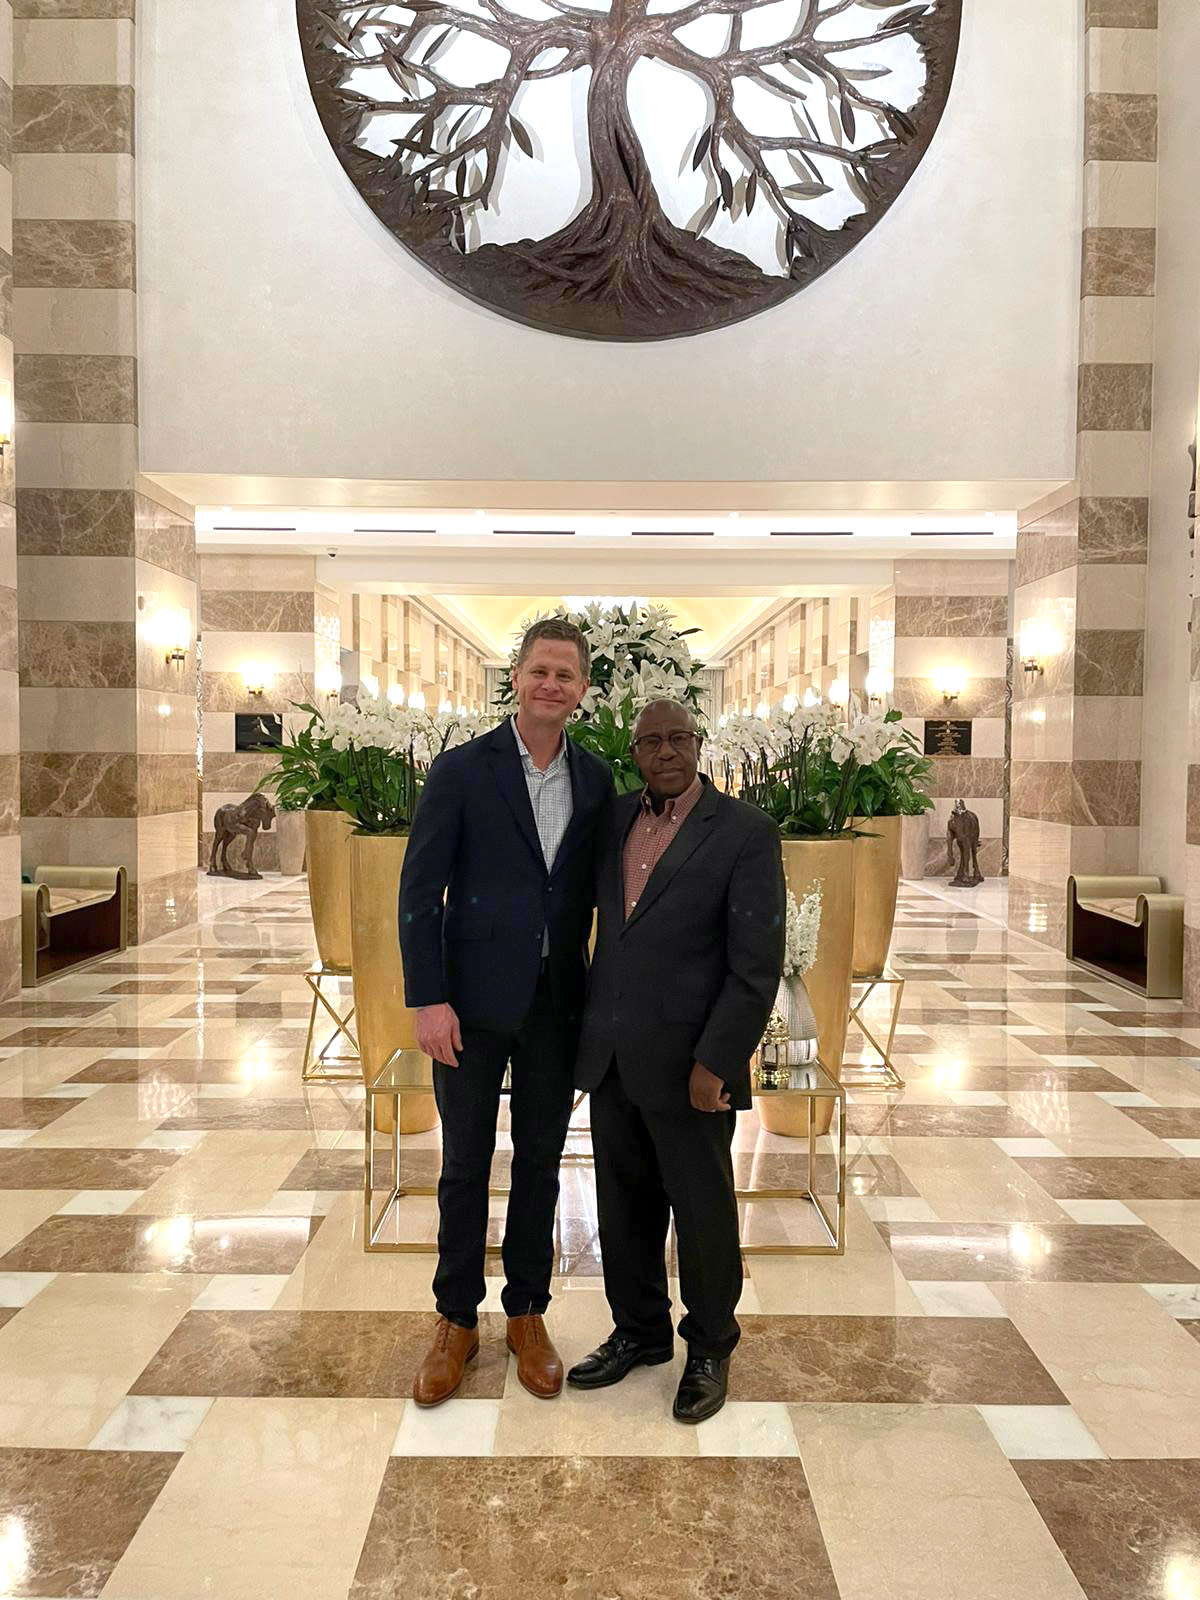 Paul Rusesabagina, a la derecha, con su abogado Ryan Fayhee en el hotel St. Regis de Doha, Catar, el mes pasado, días después de la liberación del primero. Aquí, el otrora preso disfrutó de su primera copa de vino en varios años. (Ryan Fahyee vía The New York Times)